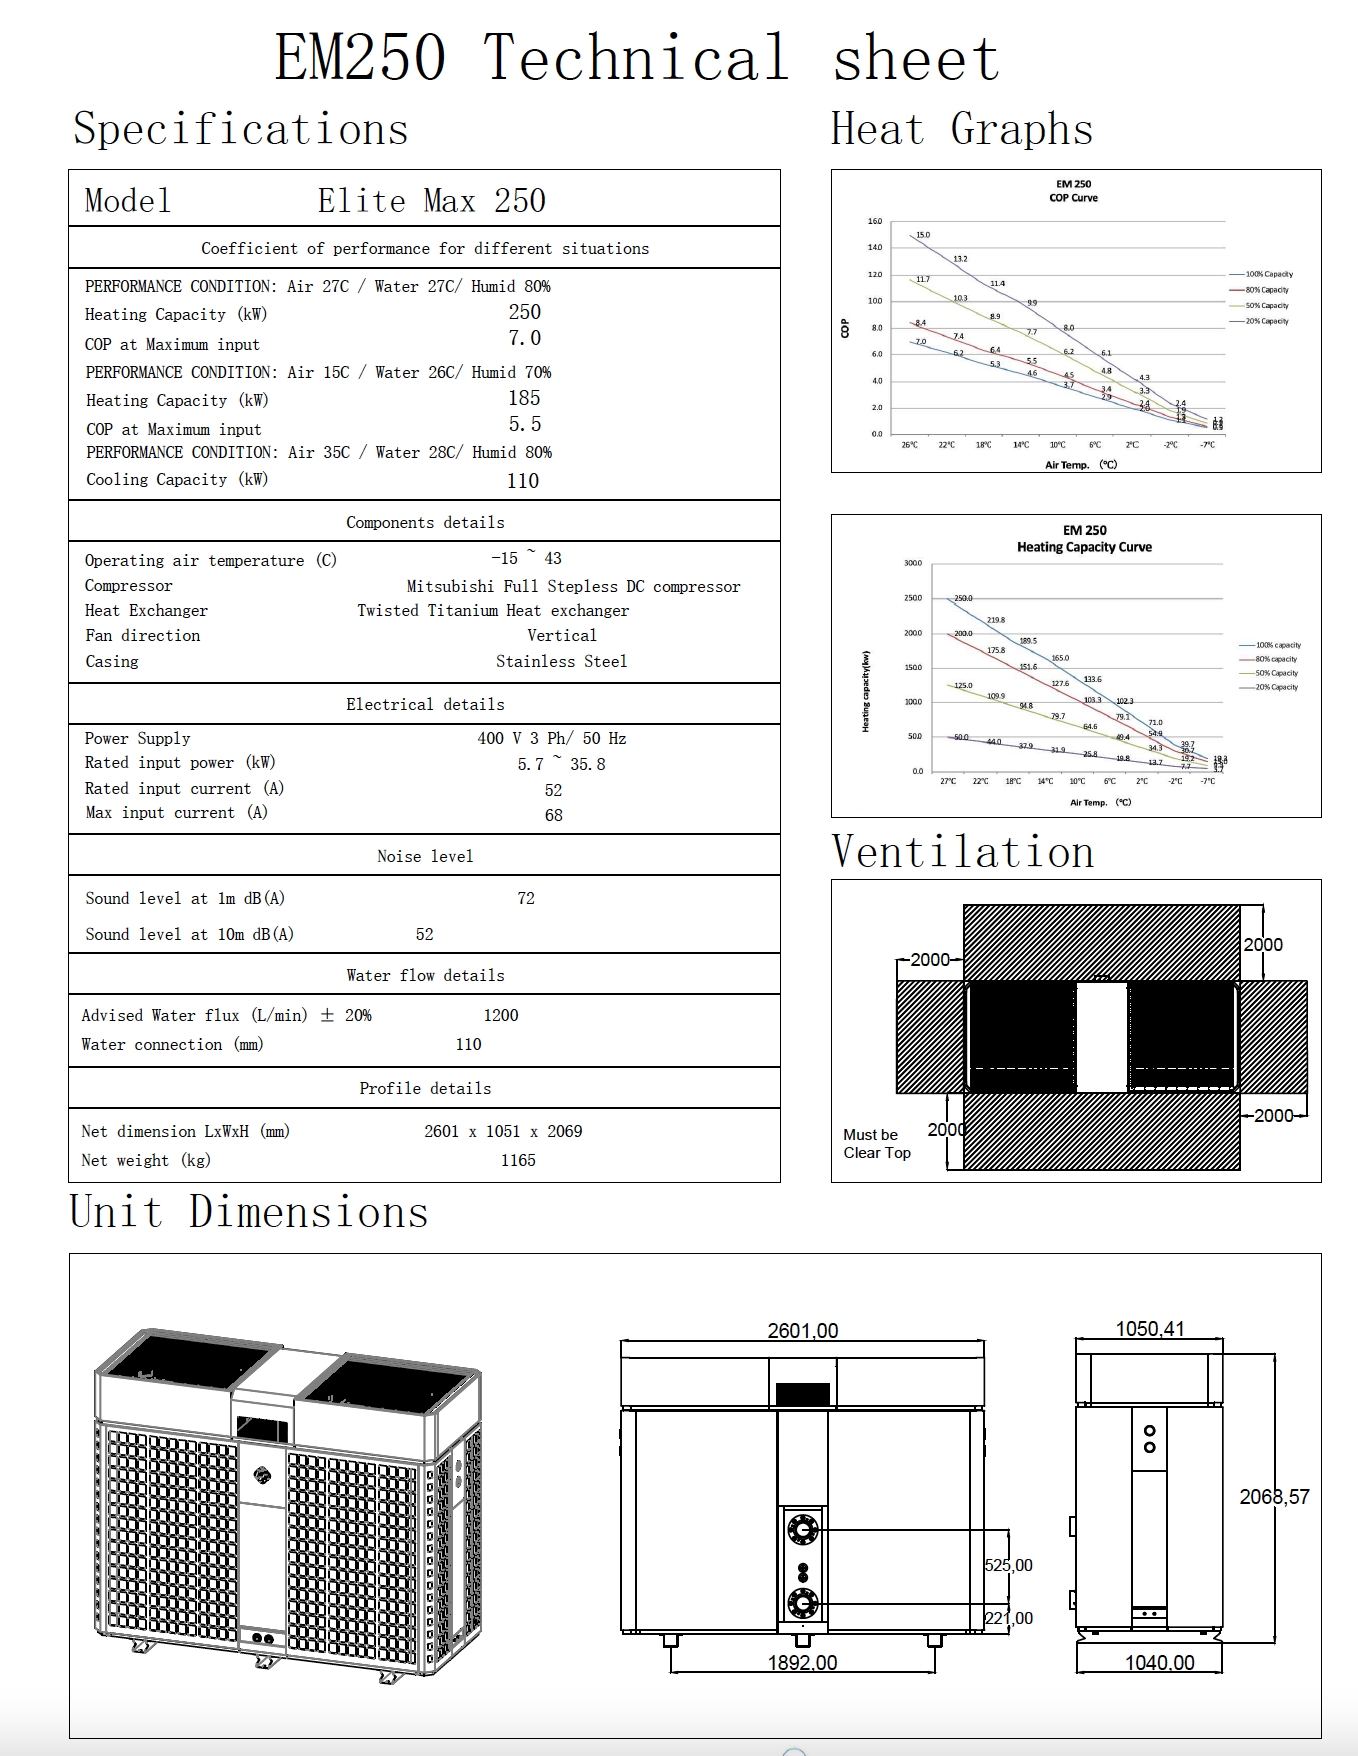 EM250 Technical Sheet